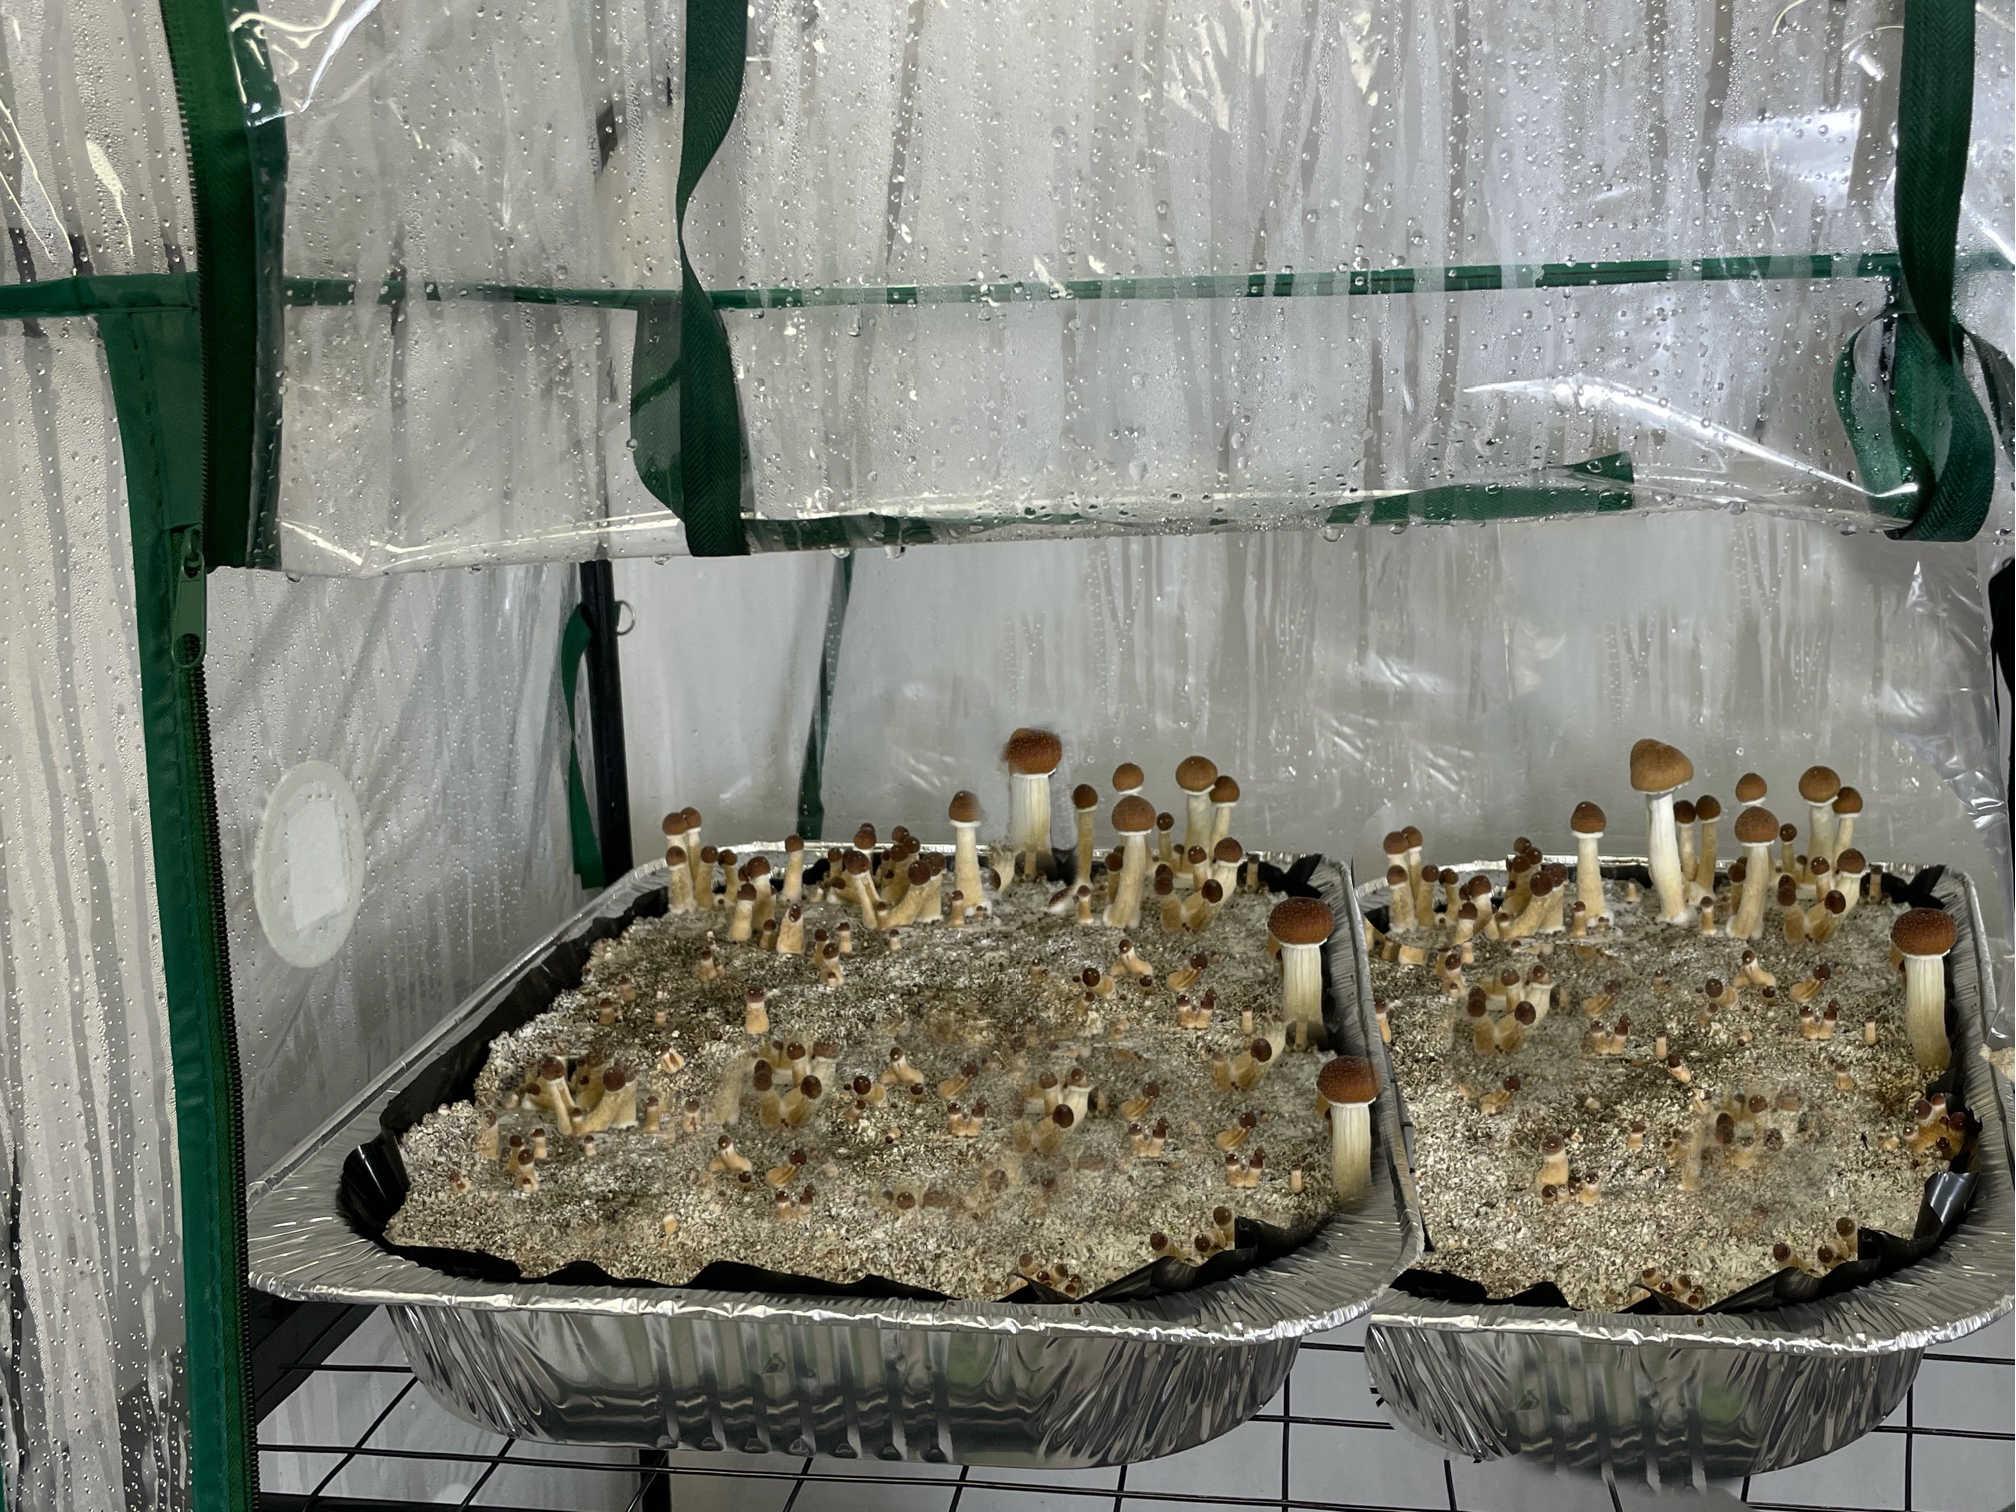 50 QTY Medium Size 5 x 4 x 18 Spawn Myco Bags W Injection Port Mushroom Grow kit 